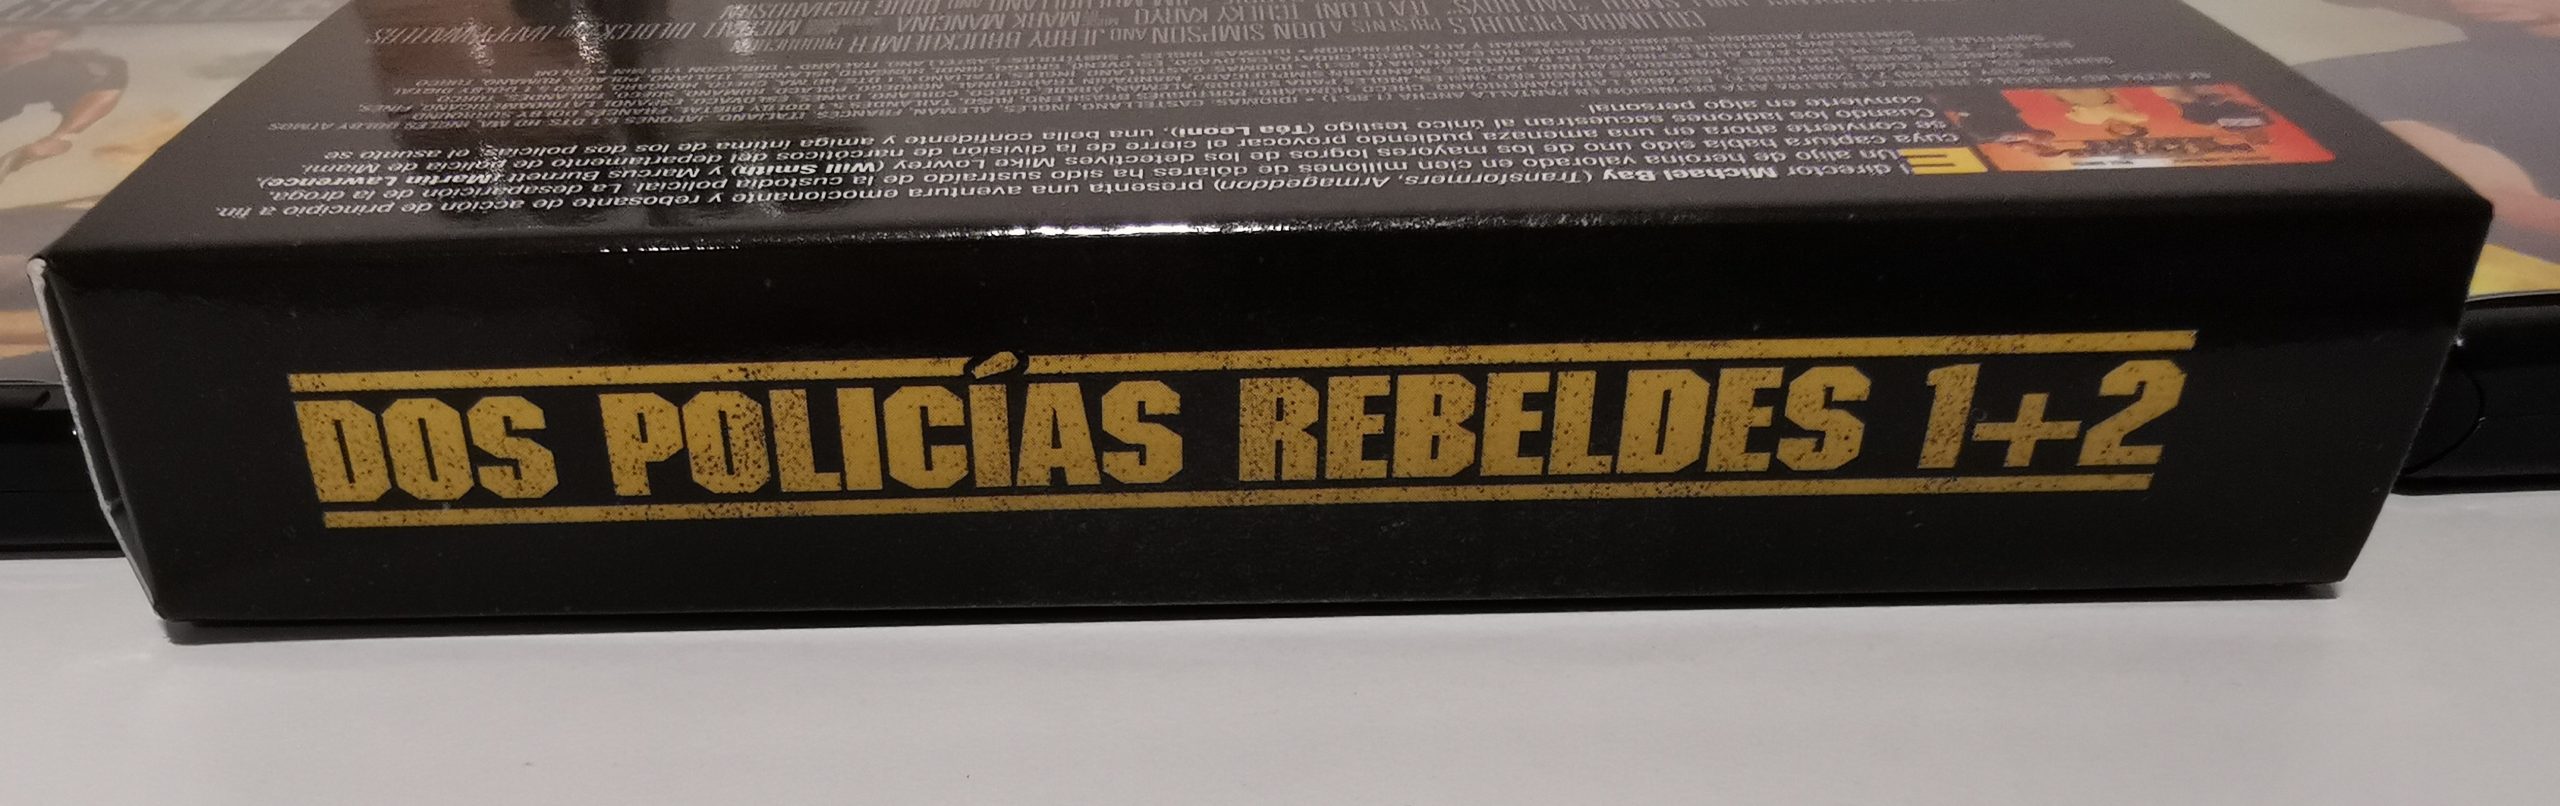 Dos policías rebeldes edición 4K caja